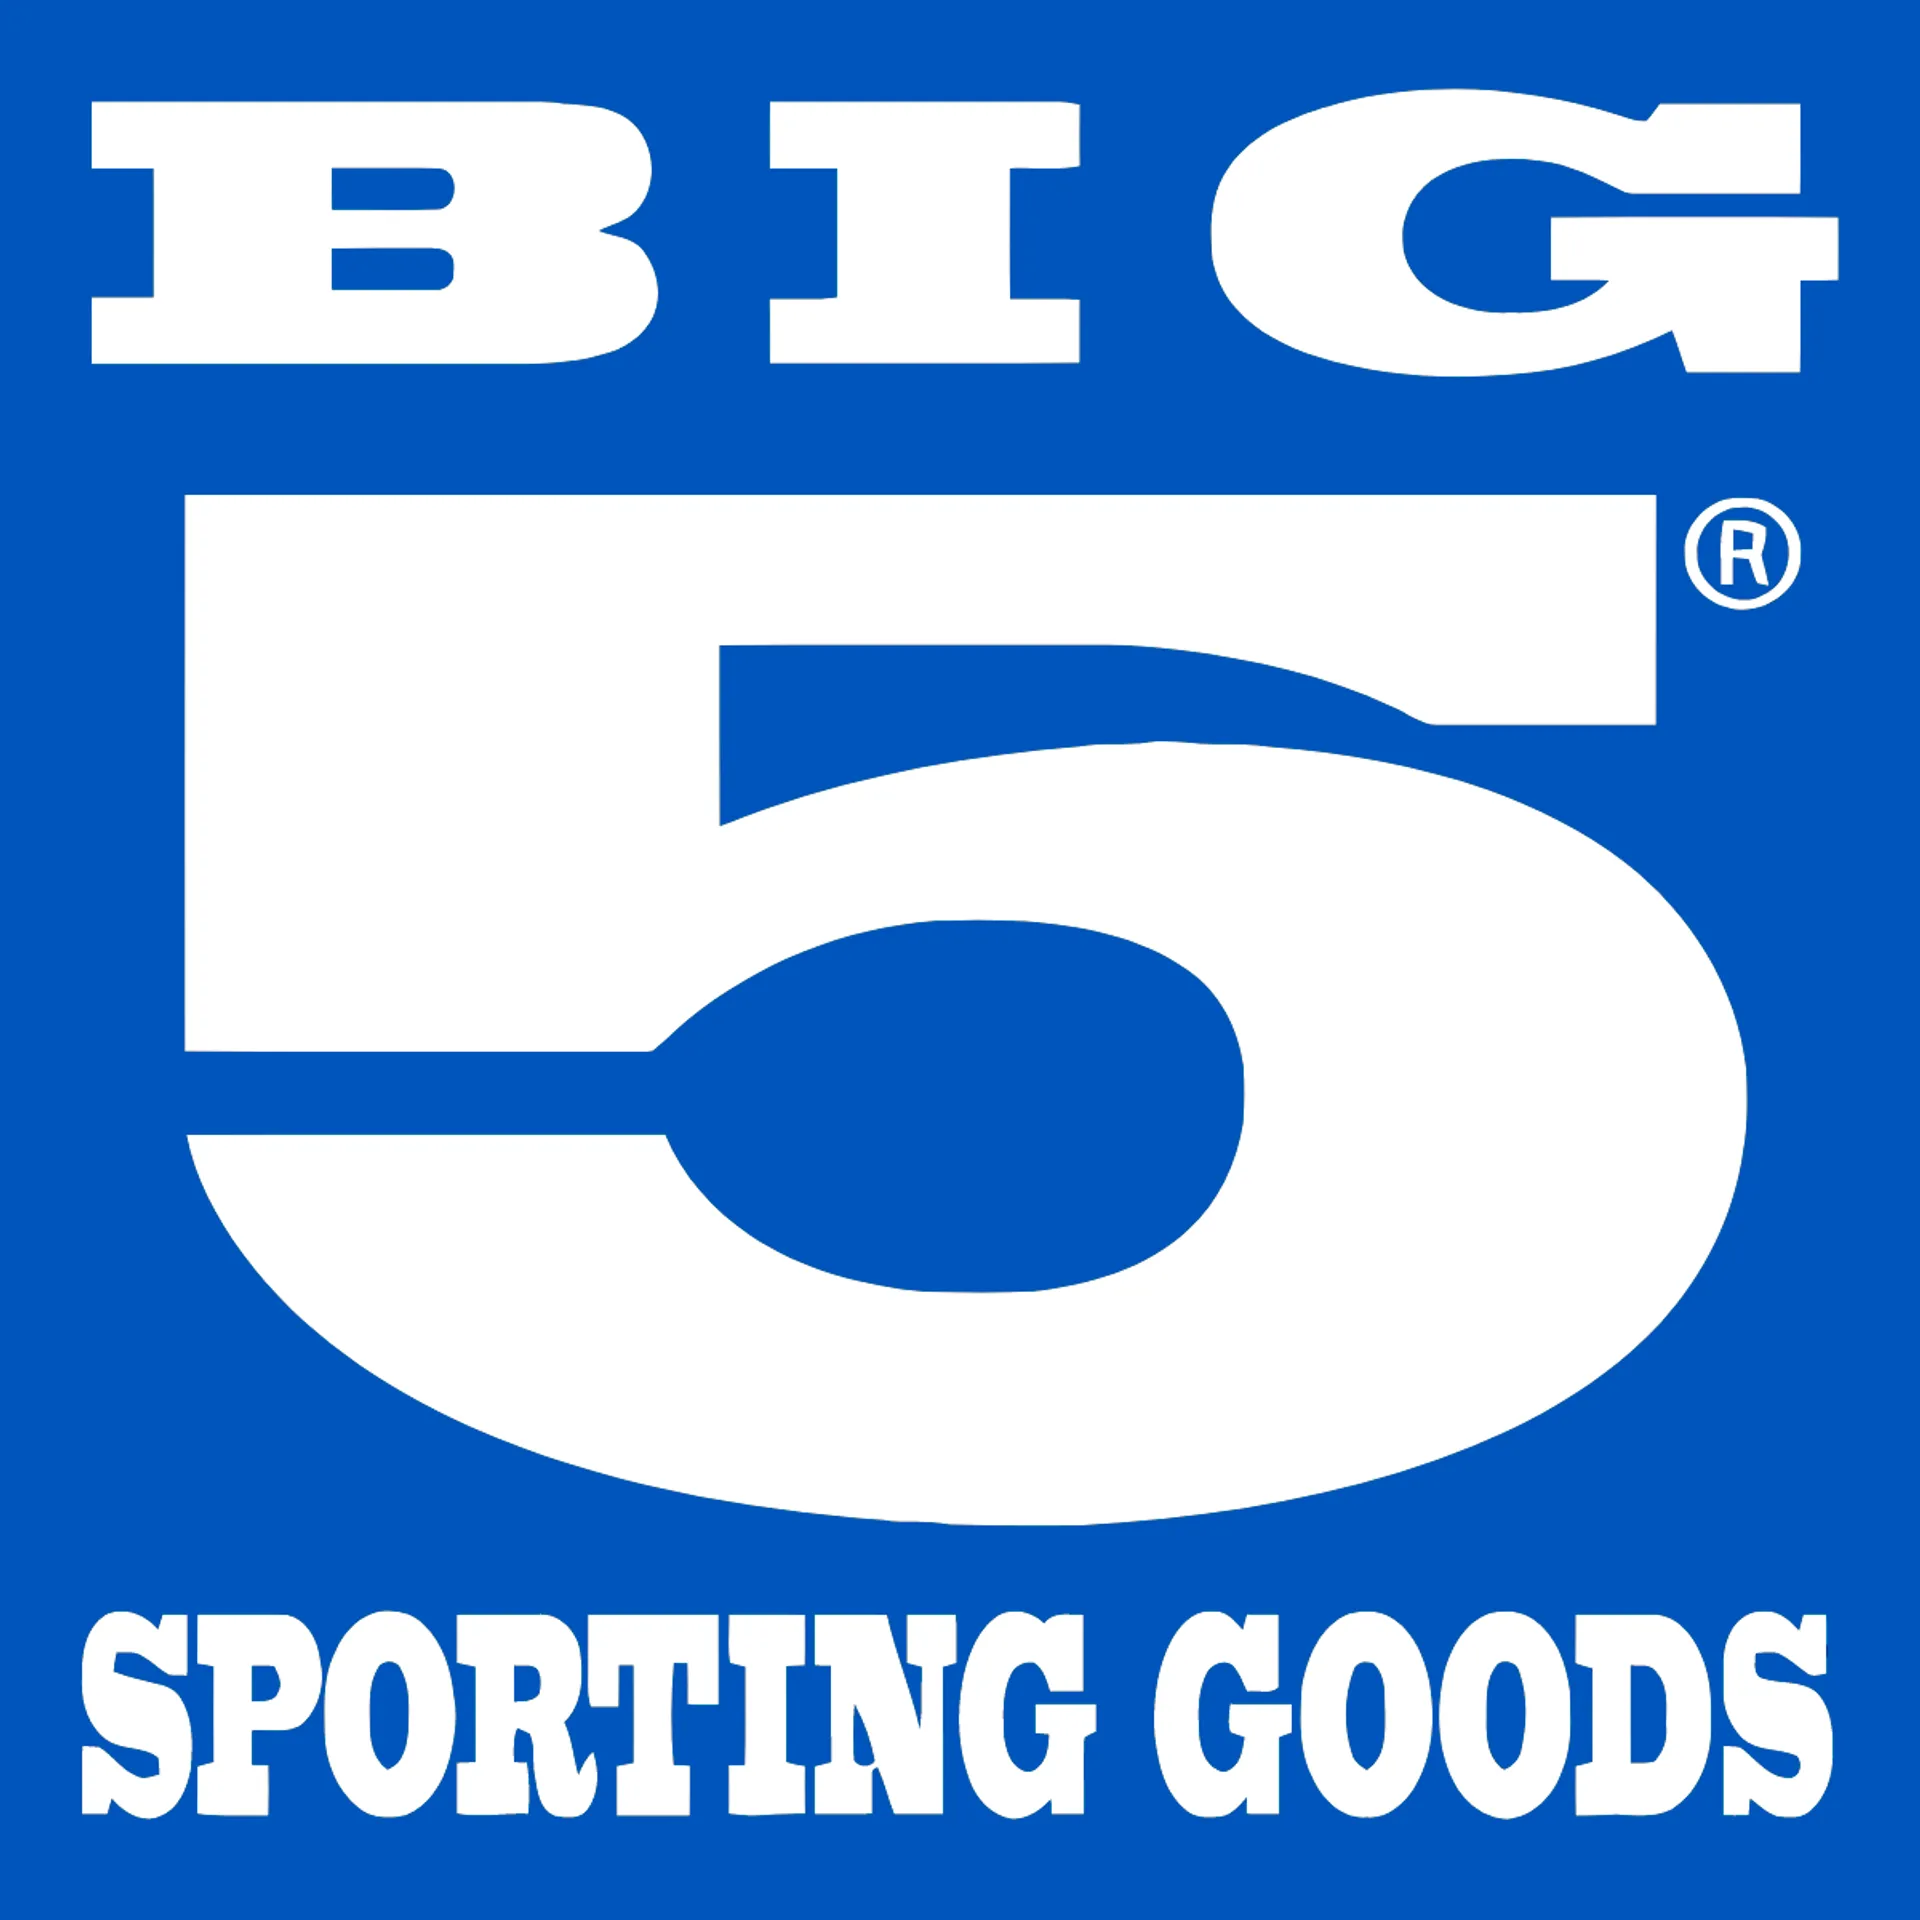 BIG 5 logo de catálogo